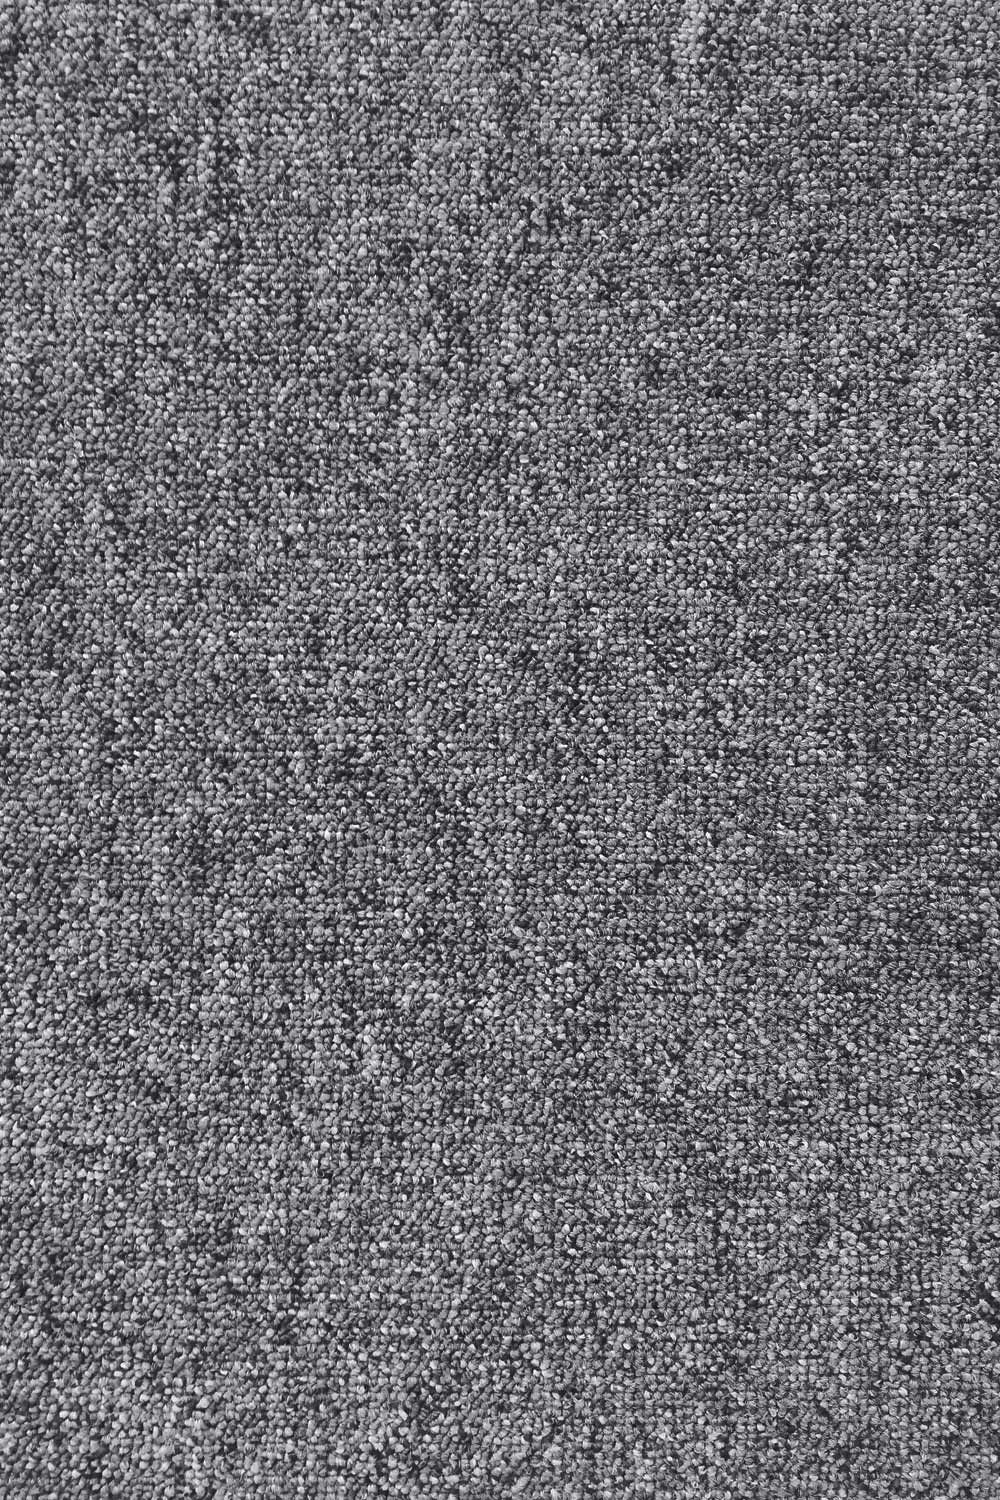 Metrážny koberec EXTREME 75 400 cm